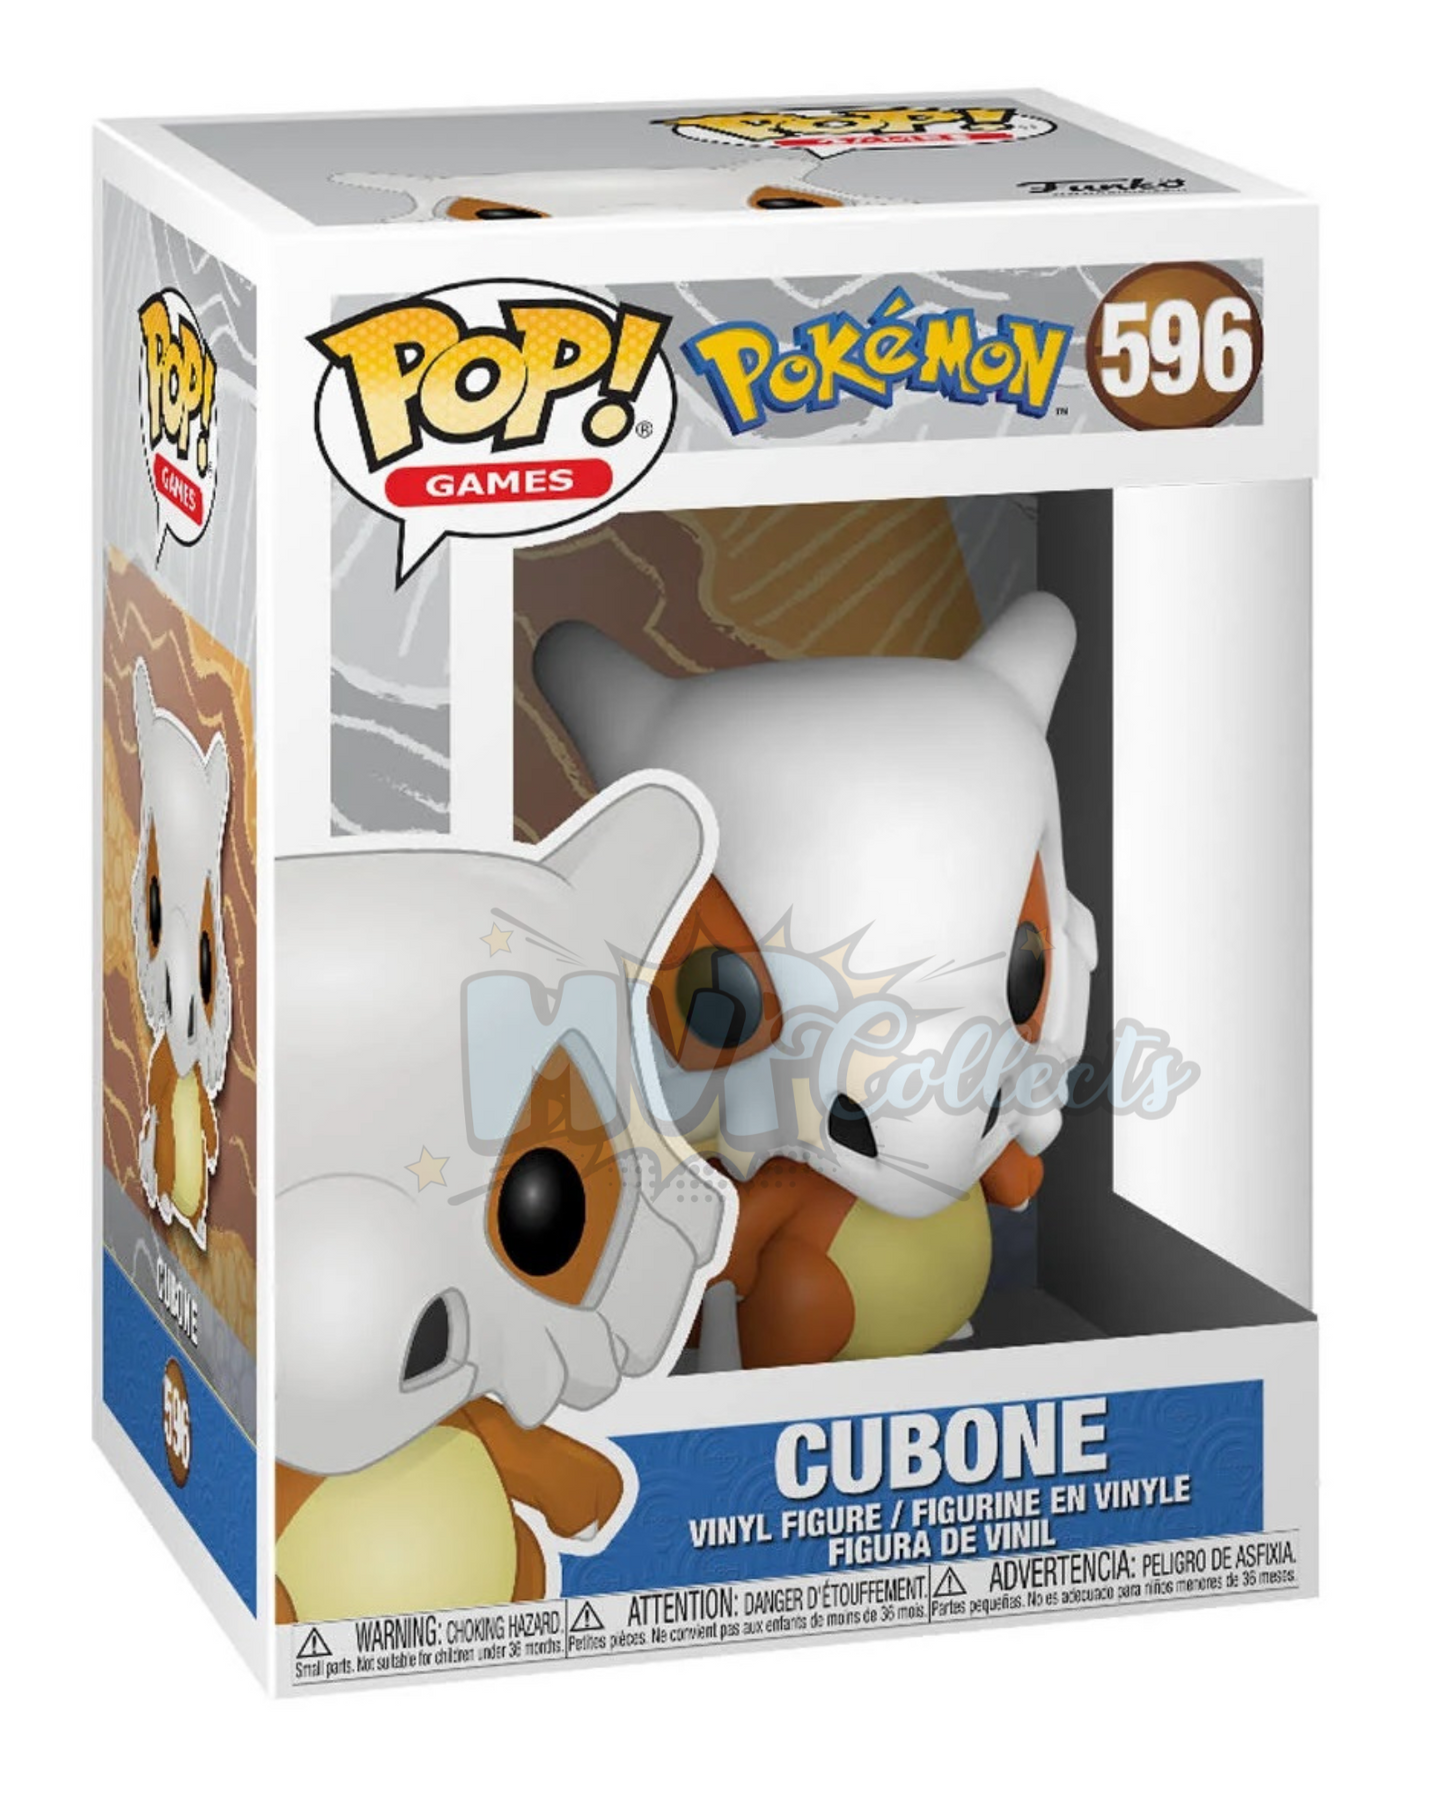 Cubone POP! (Pokemon) 596